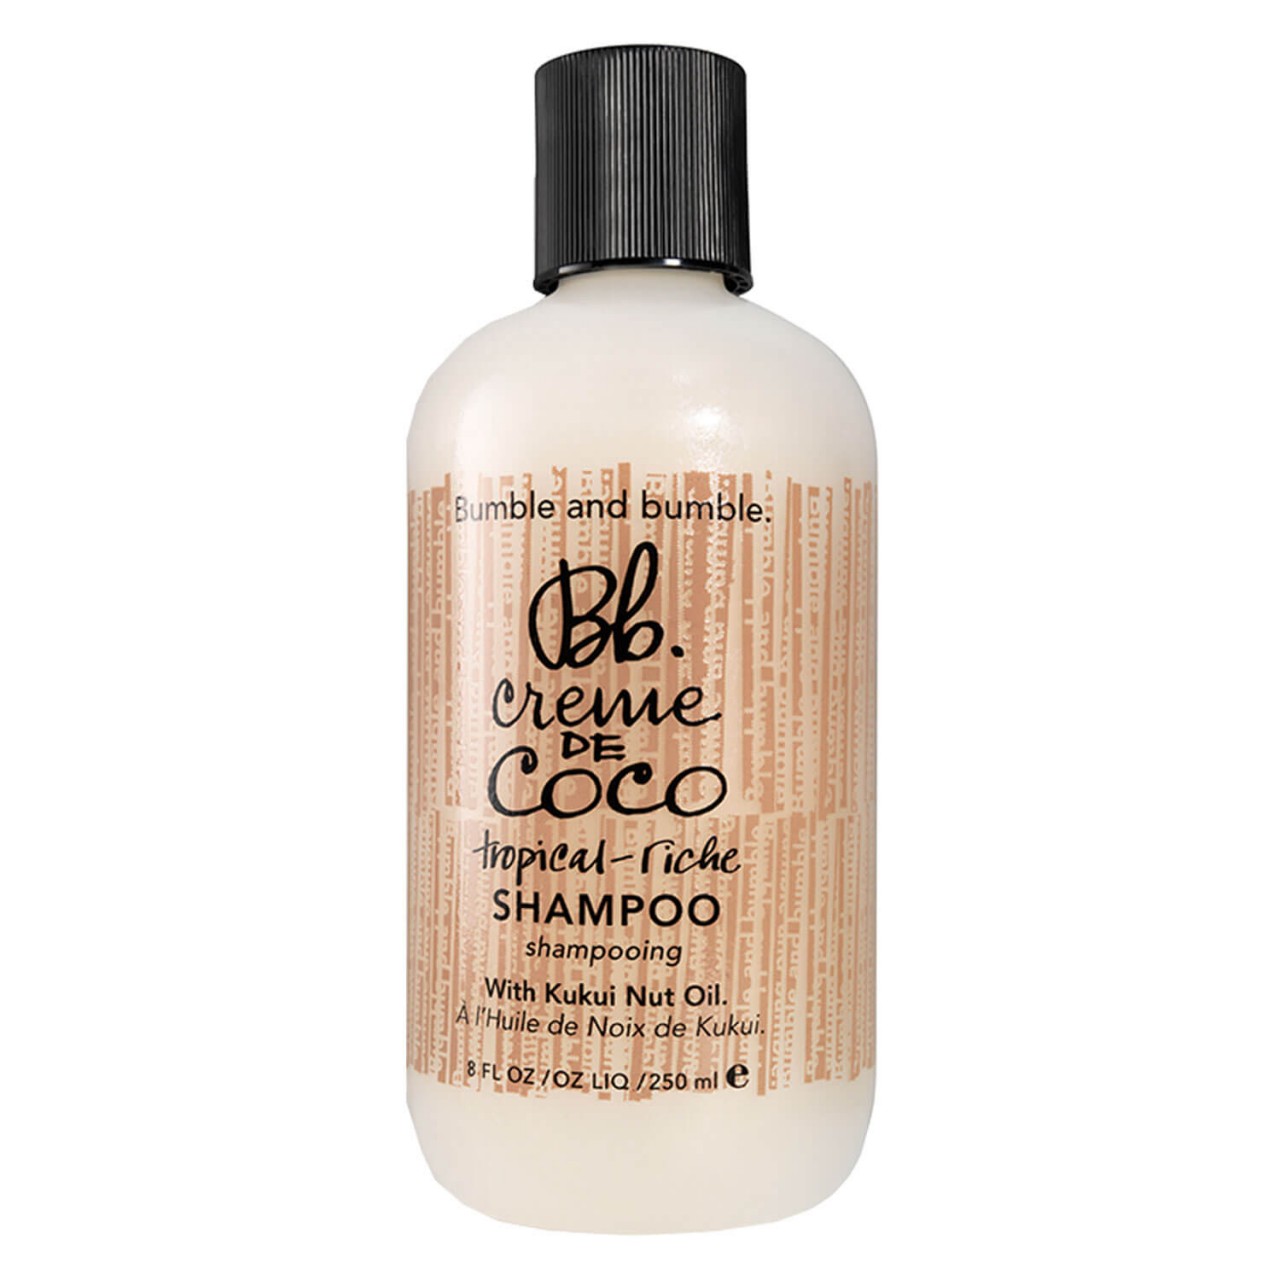 Bb. Creme de Coco - Shampoo von Bumble and bumble.